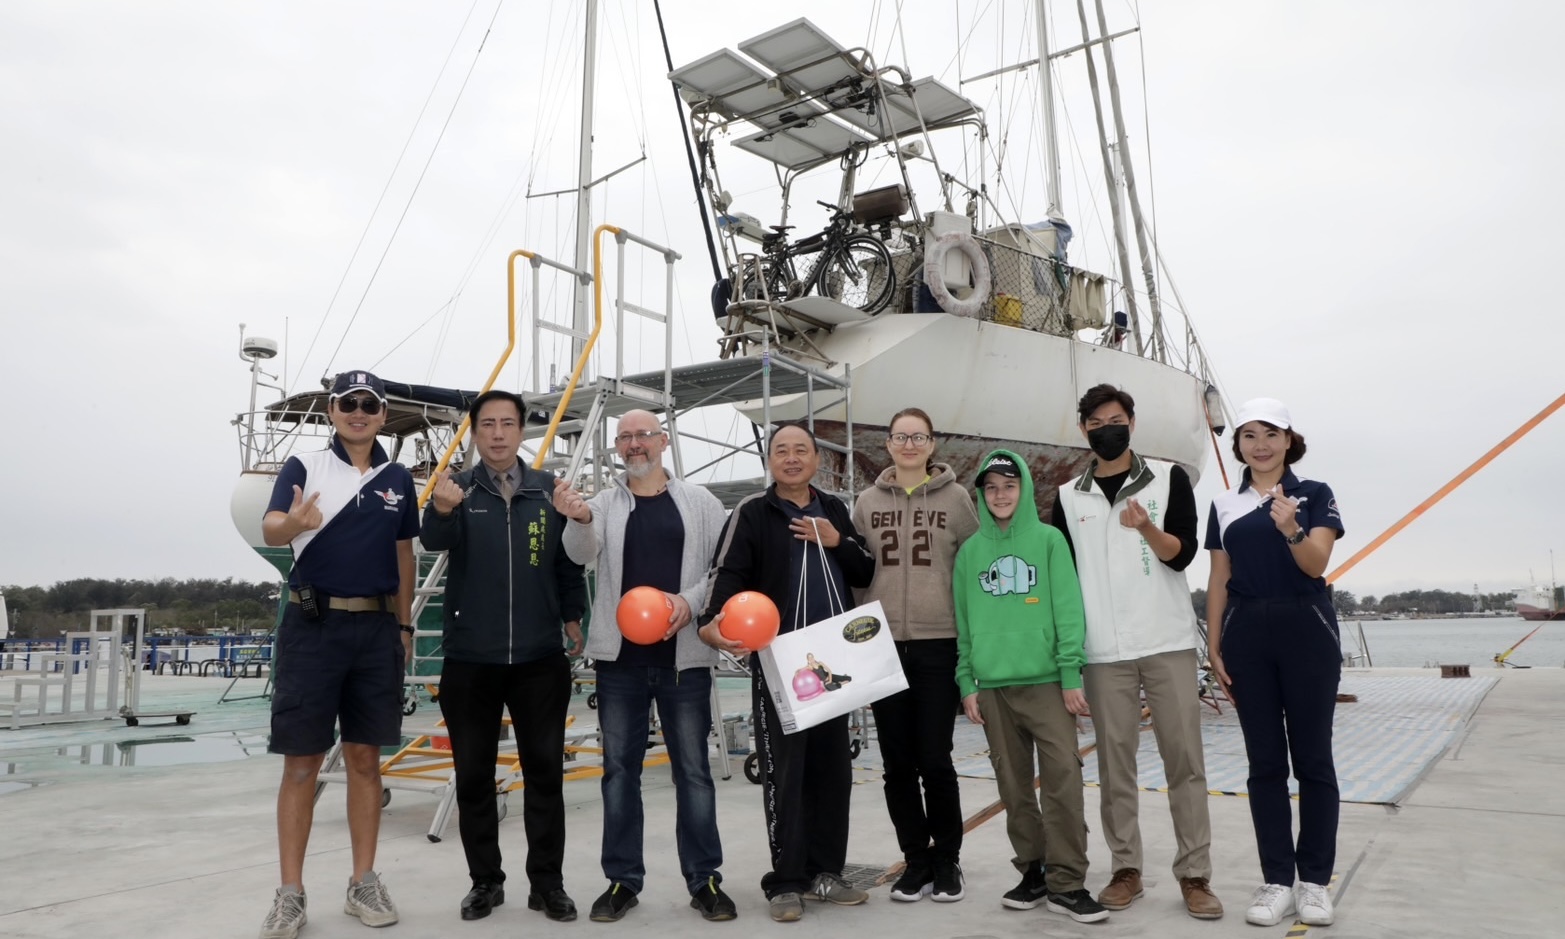  烏克蘭家庭逃難 臺南協助修復帆船 